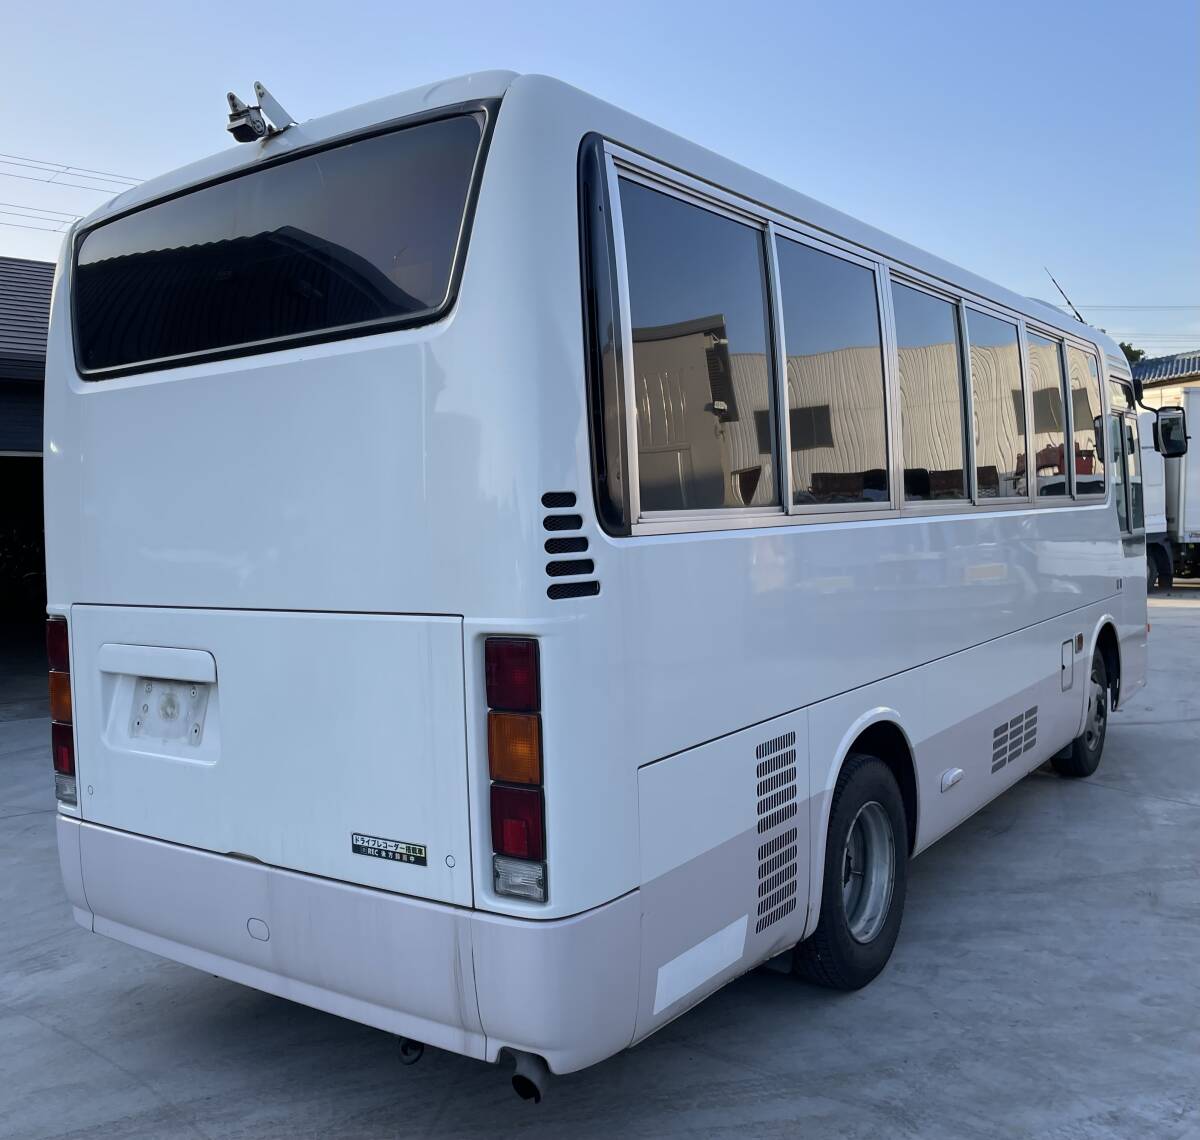  Reise пневматическая подвеска микроавтобус средний 29 посадочных мест Rosa Civilian Coaster спальное место в транспортном средстве van жизнь кемпинг 